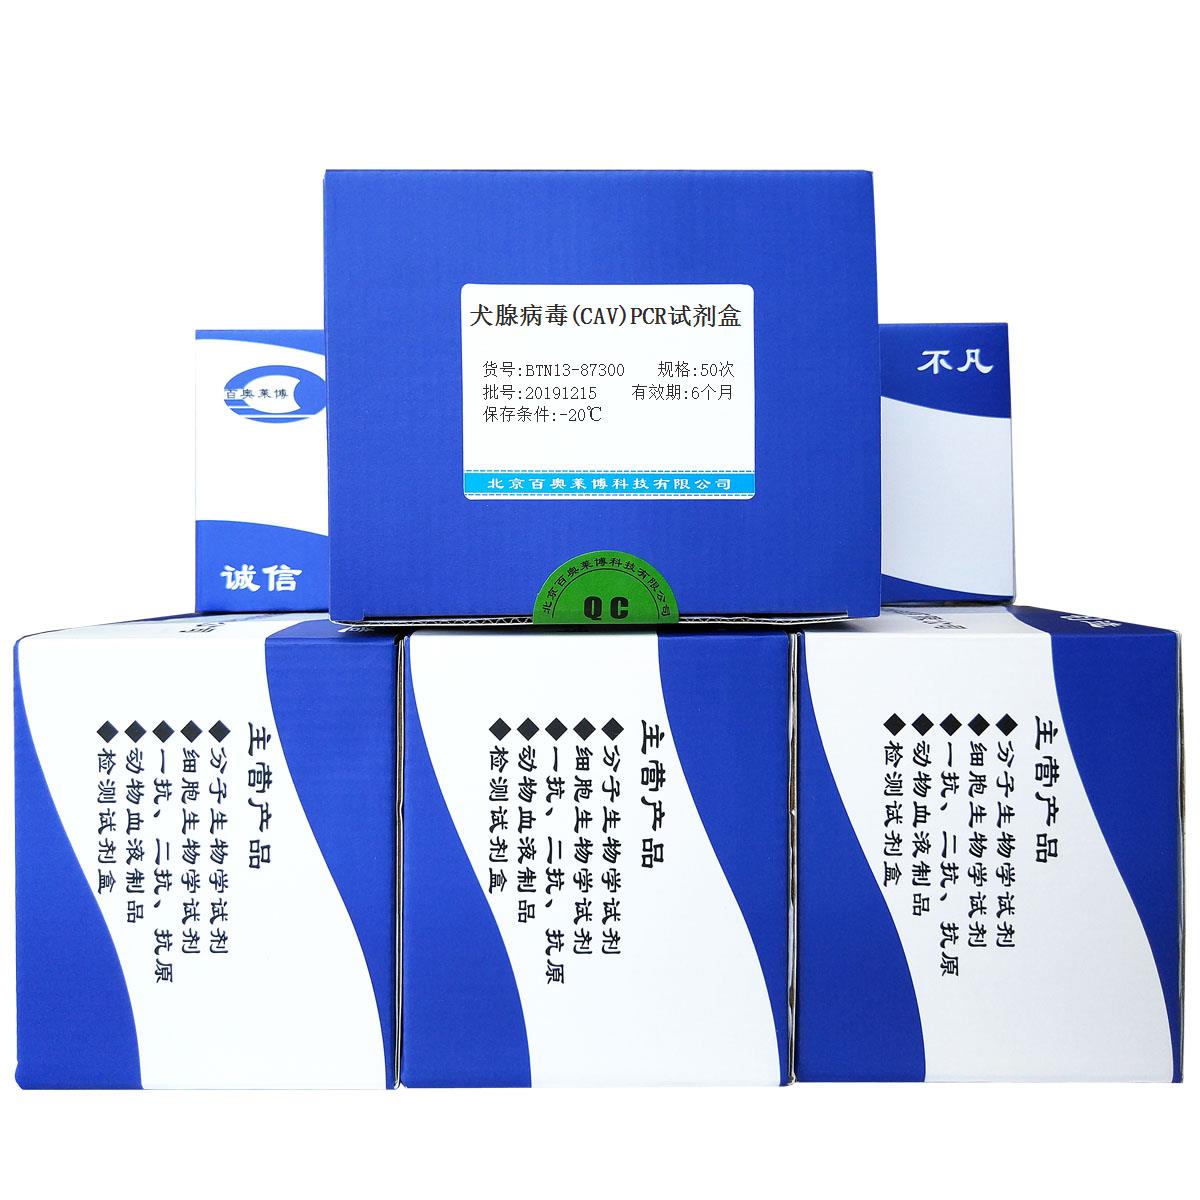 犬腺病毒(CAV)PCR试剂盒北京厂家